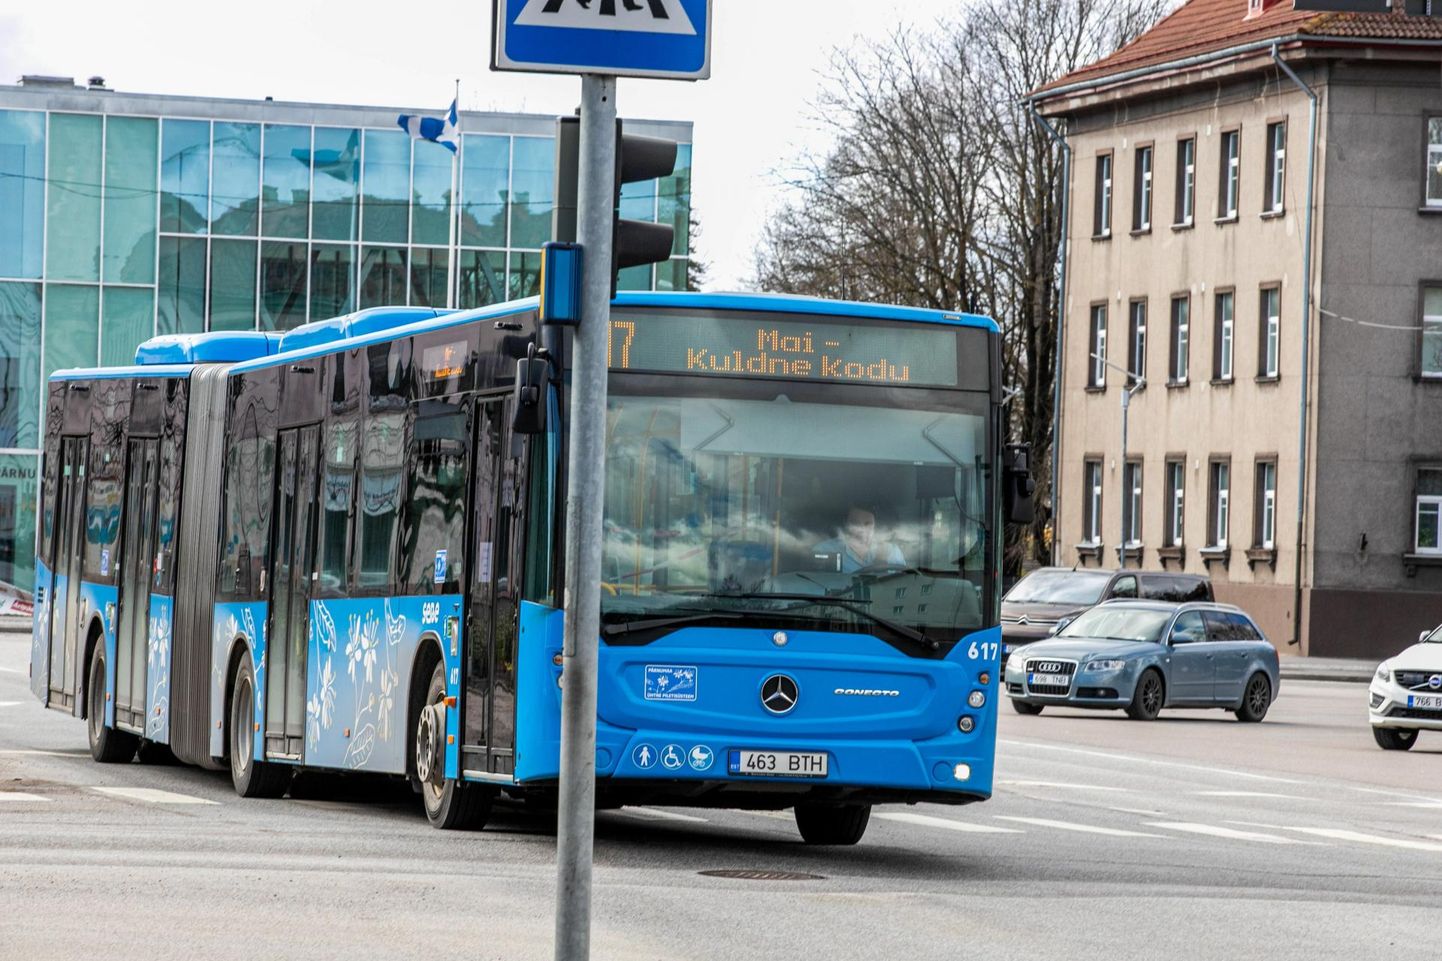 Alates aprillist hakkab Pärnu kesklinna ja Silla tehnoküla vahel sõitma buss 29. Foto on illustreeriv.